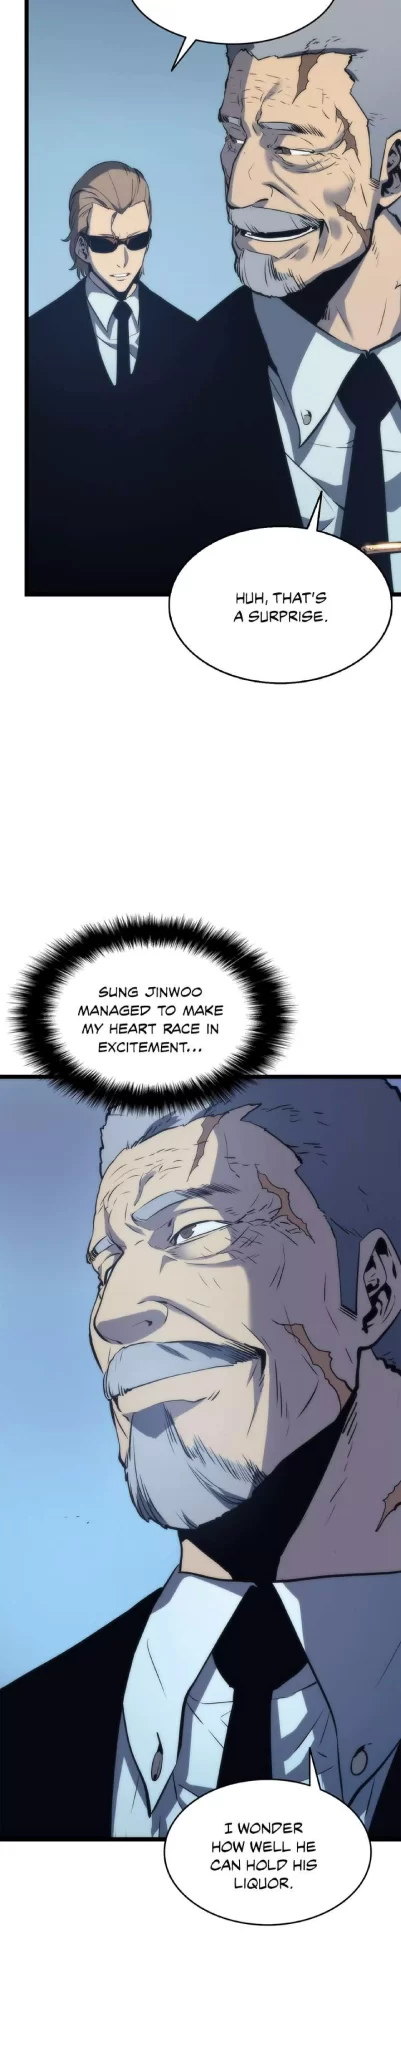 Solo Leveling Manga Manga Chapter - 64 - image 16